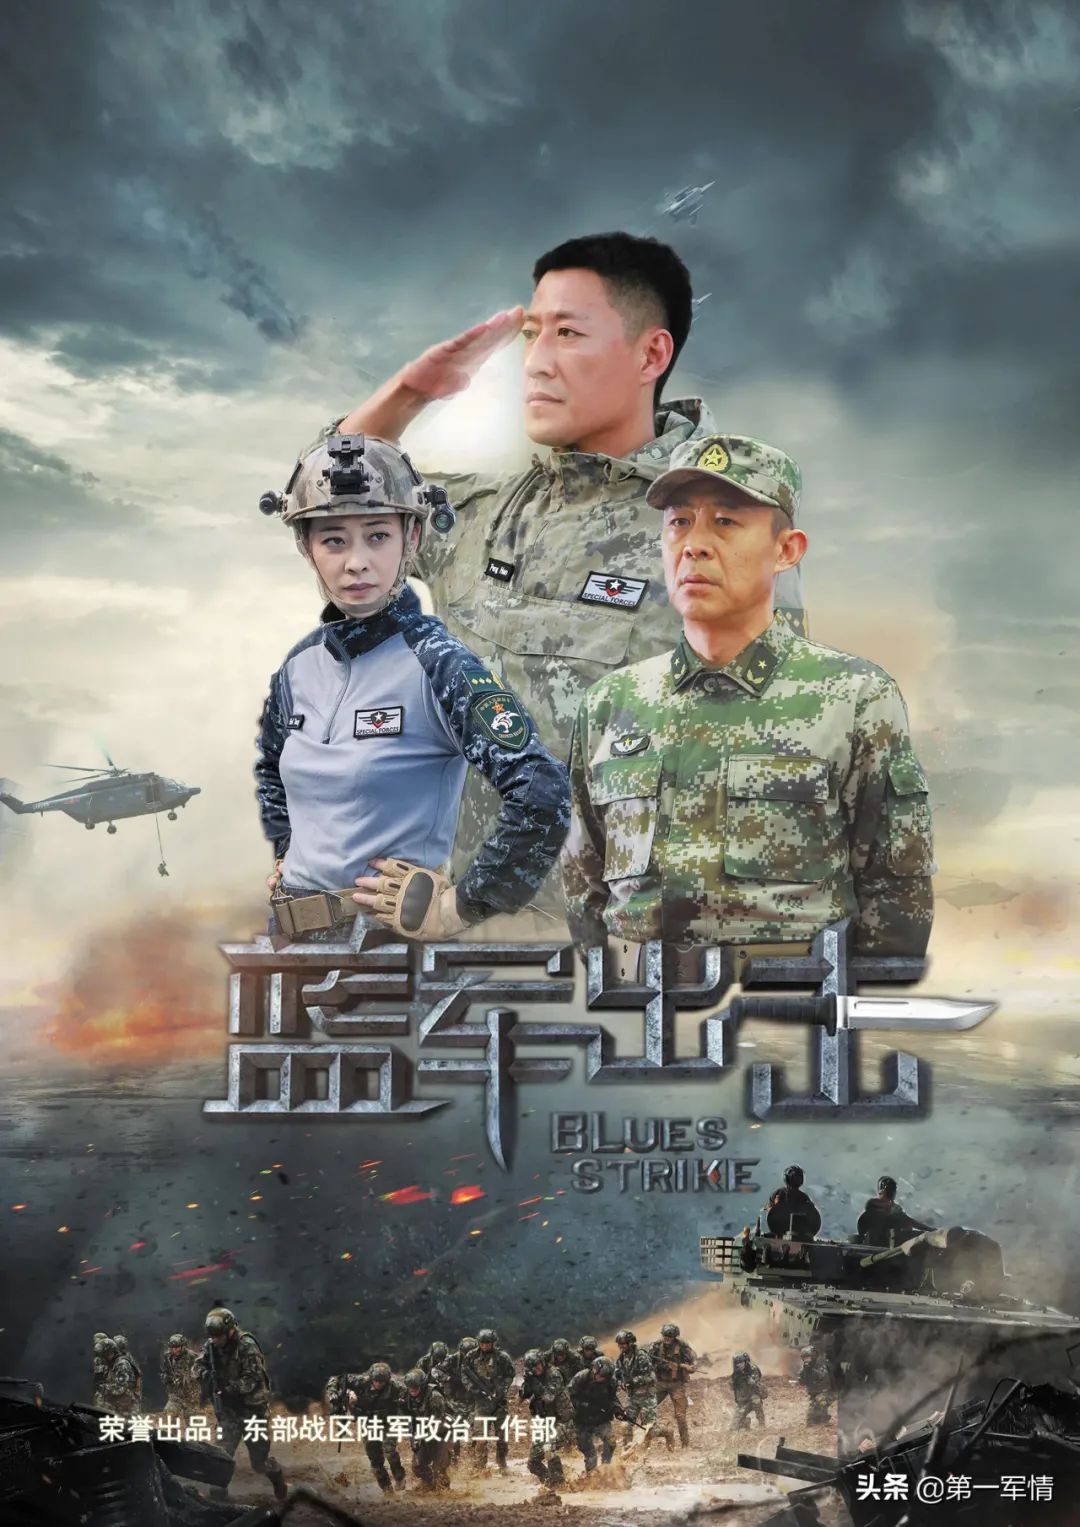 军事大片《蓝军出击》 将于9月4日在江苏卫视首播